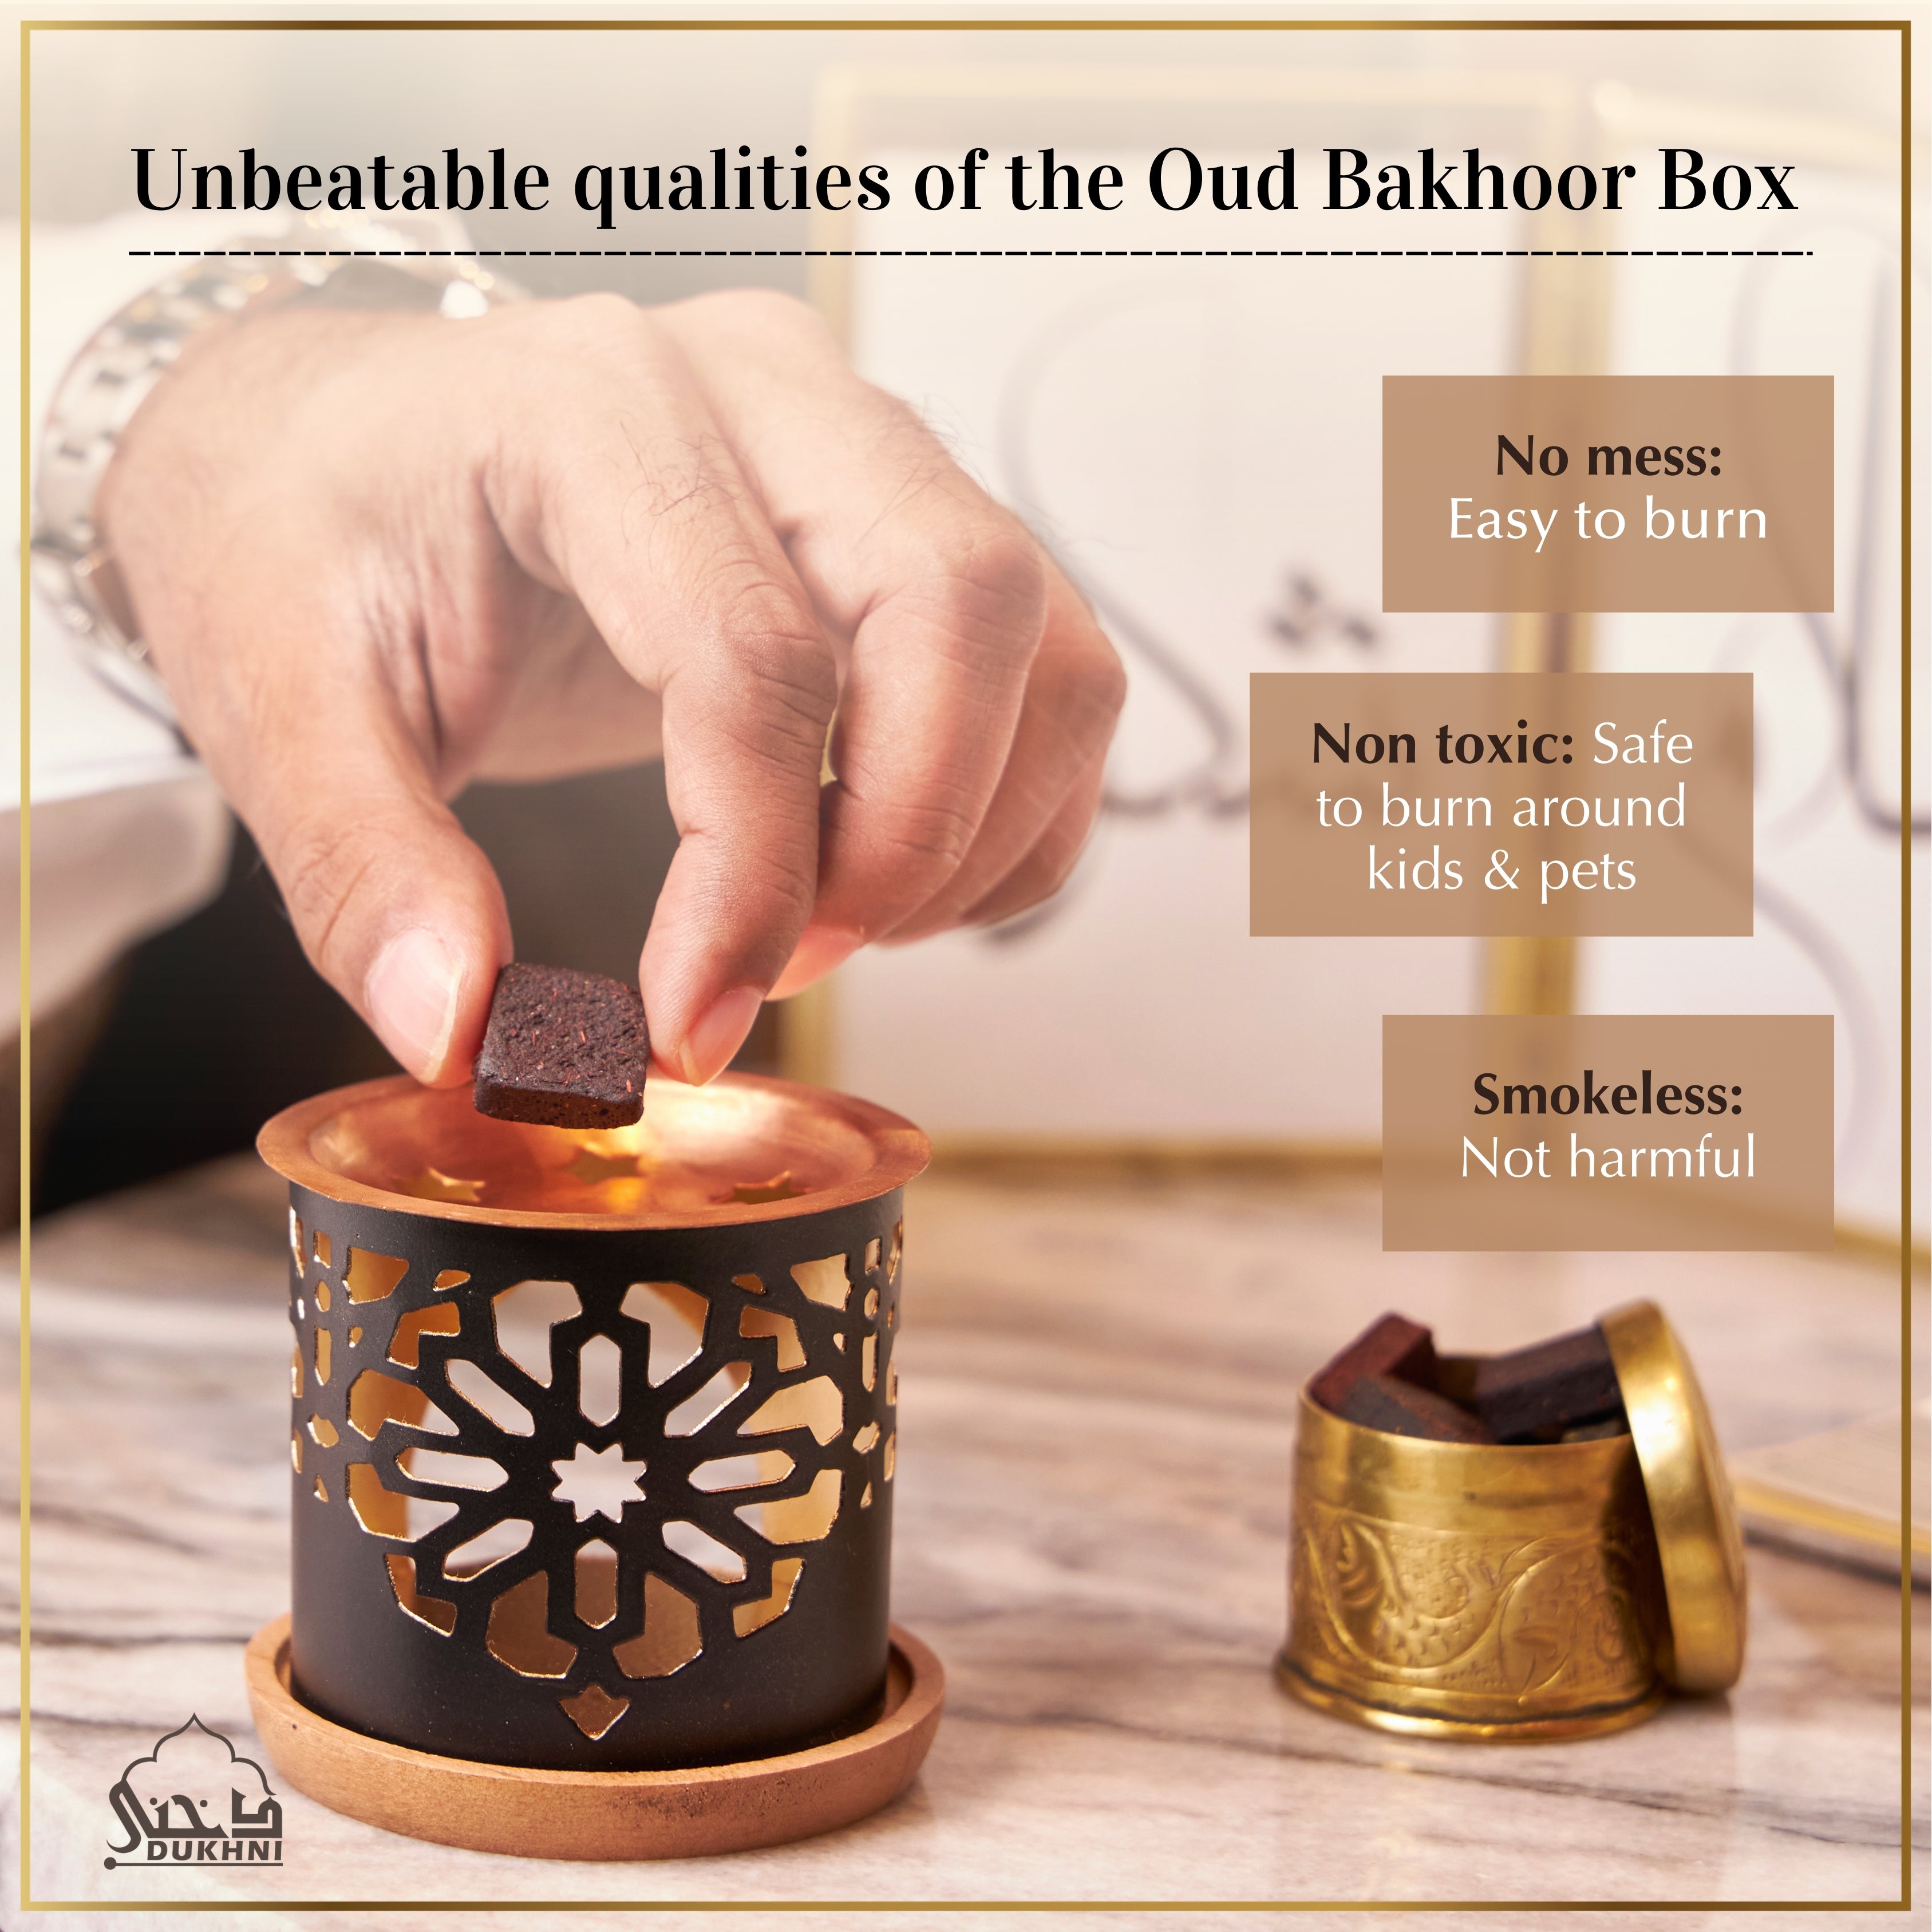 Bakhoor Oud – The Oud Co.